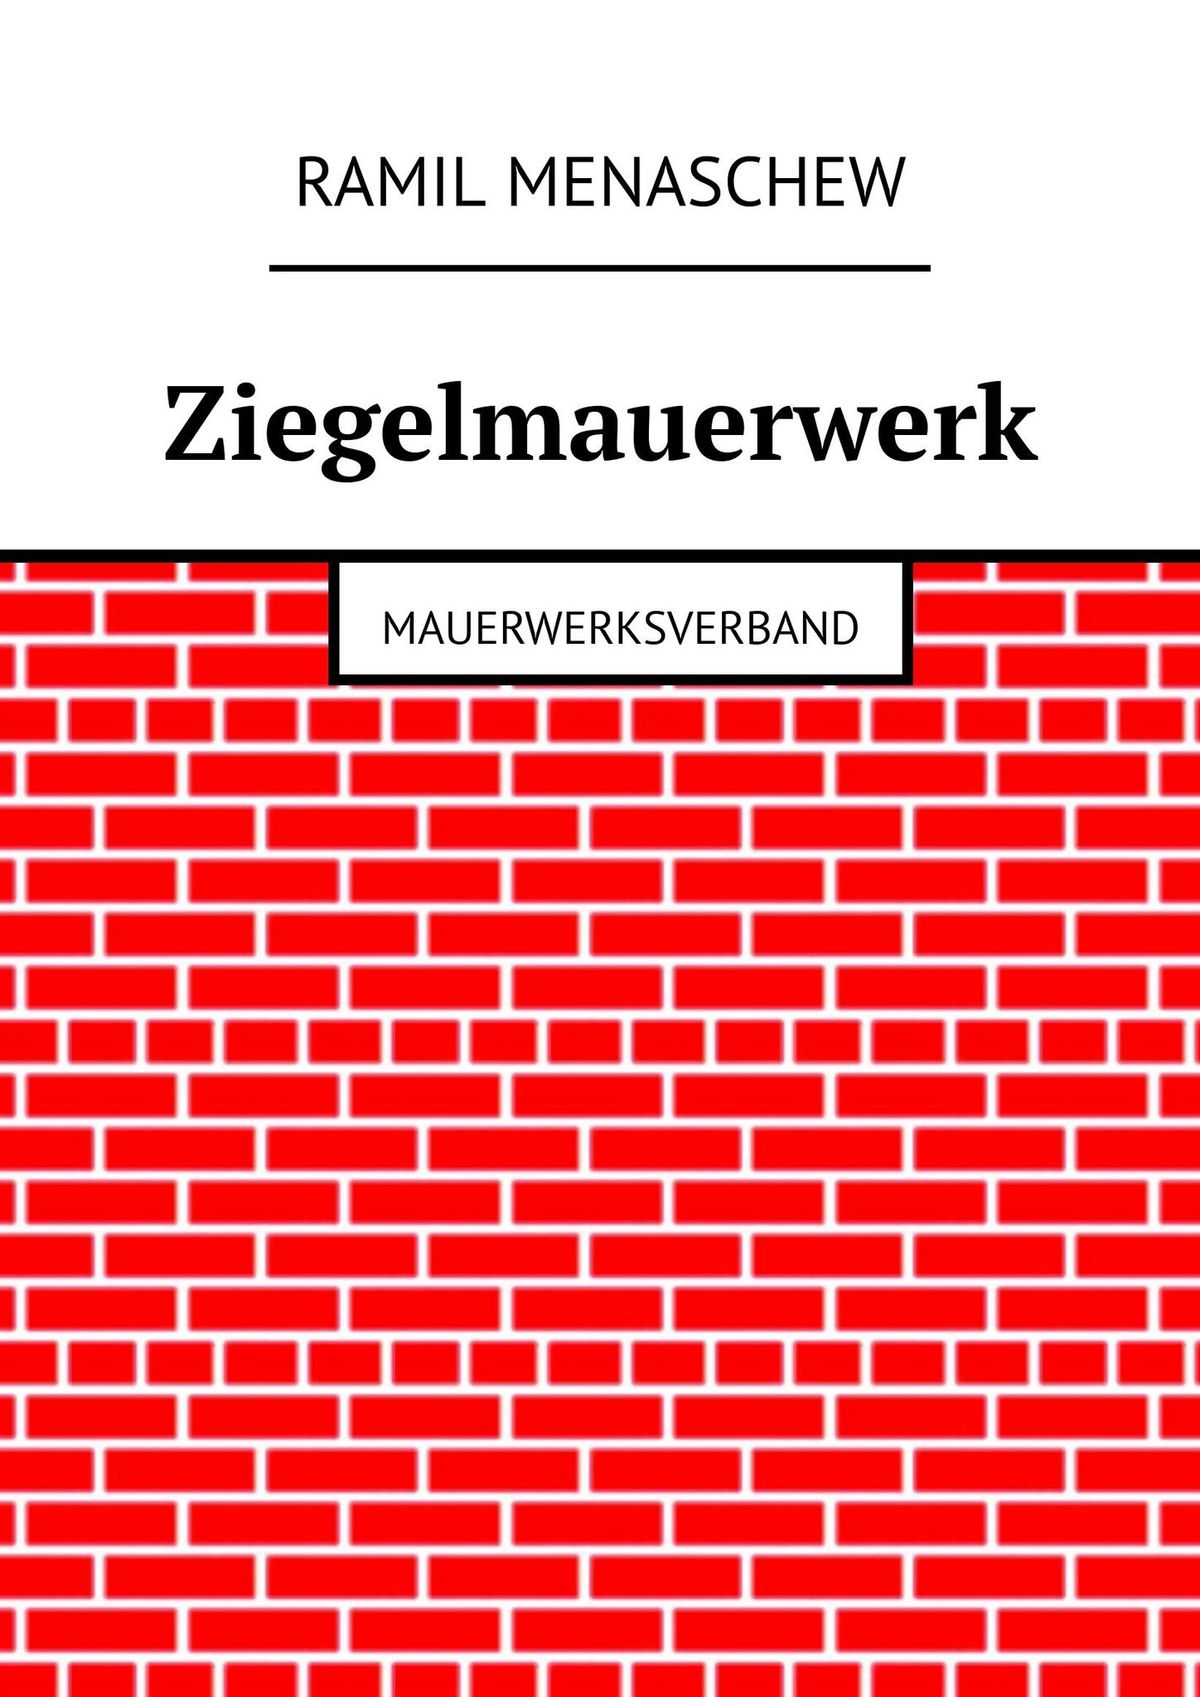 Книга Ziegelmauerwerk. Mauerwerksverband из серии , созданная Ramil Menaschew, может относится к жанру Руководства. Стоимость книги Ziegelmauerwerk. Mauerwerksverband  с идентификатором 28720981 составляет 400.00 руб.